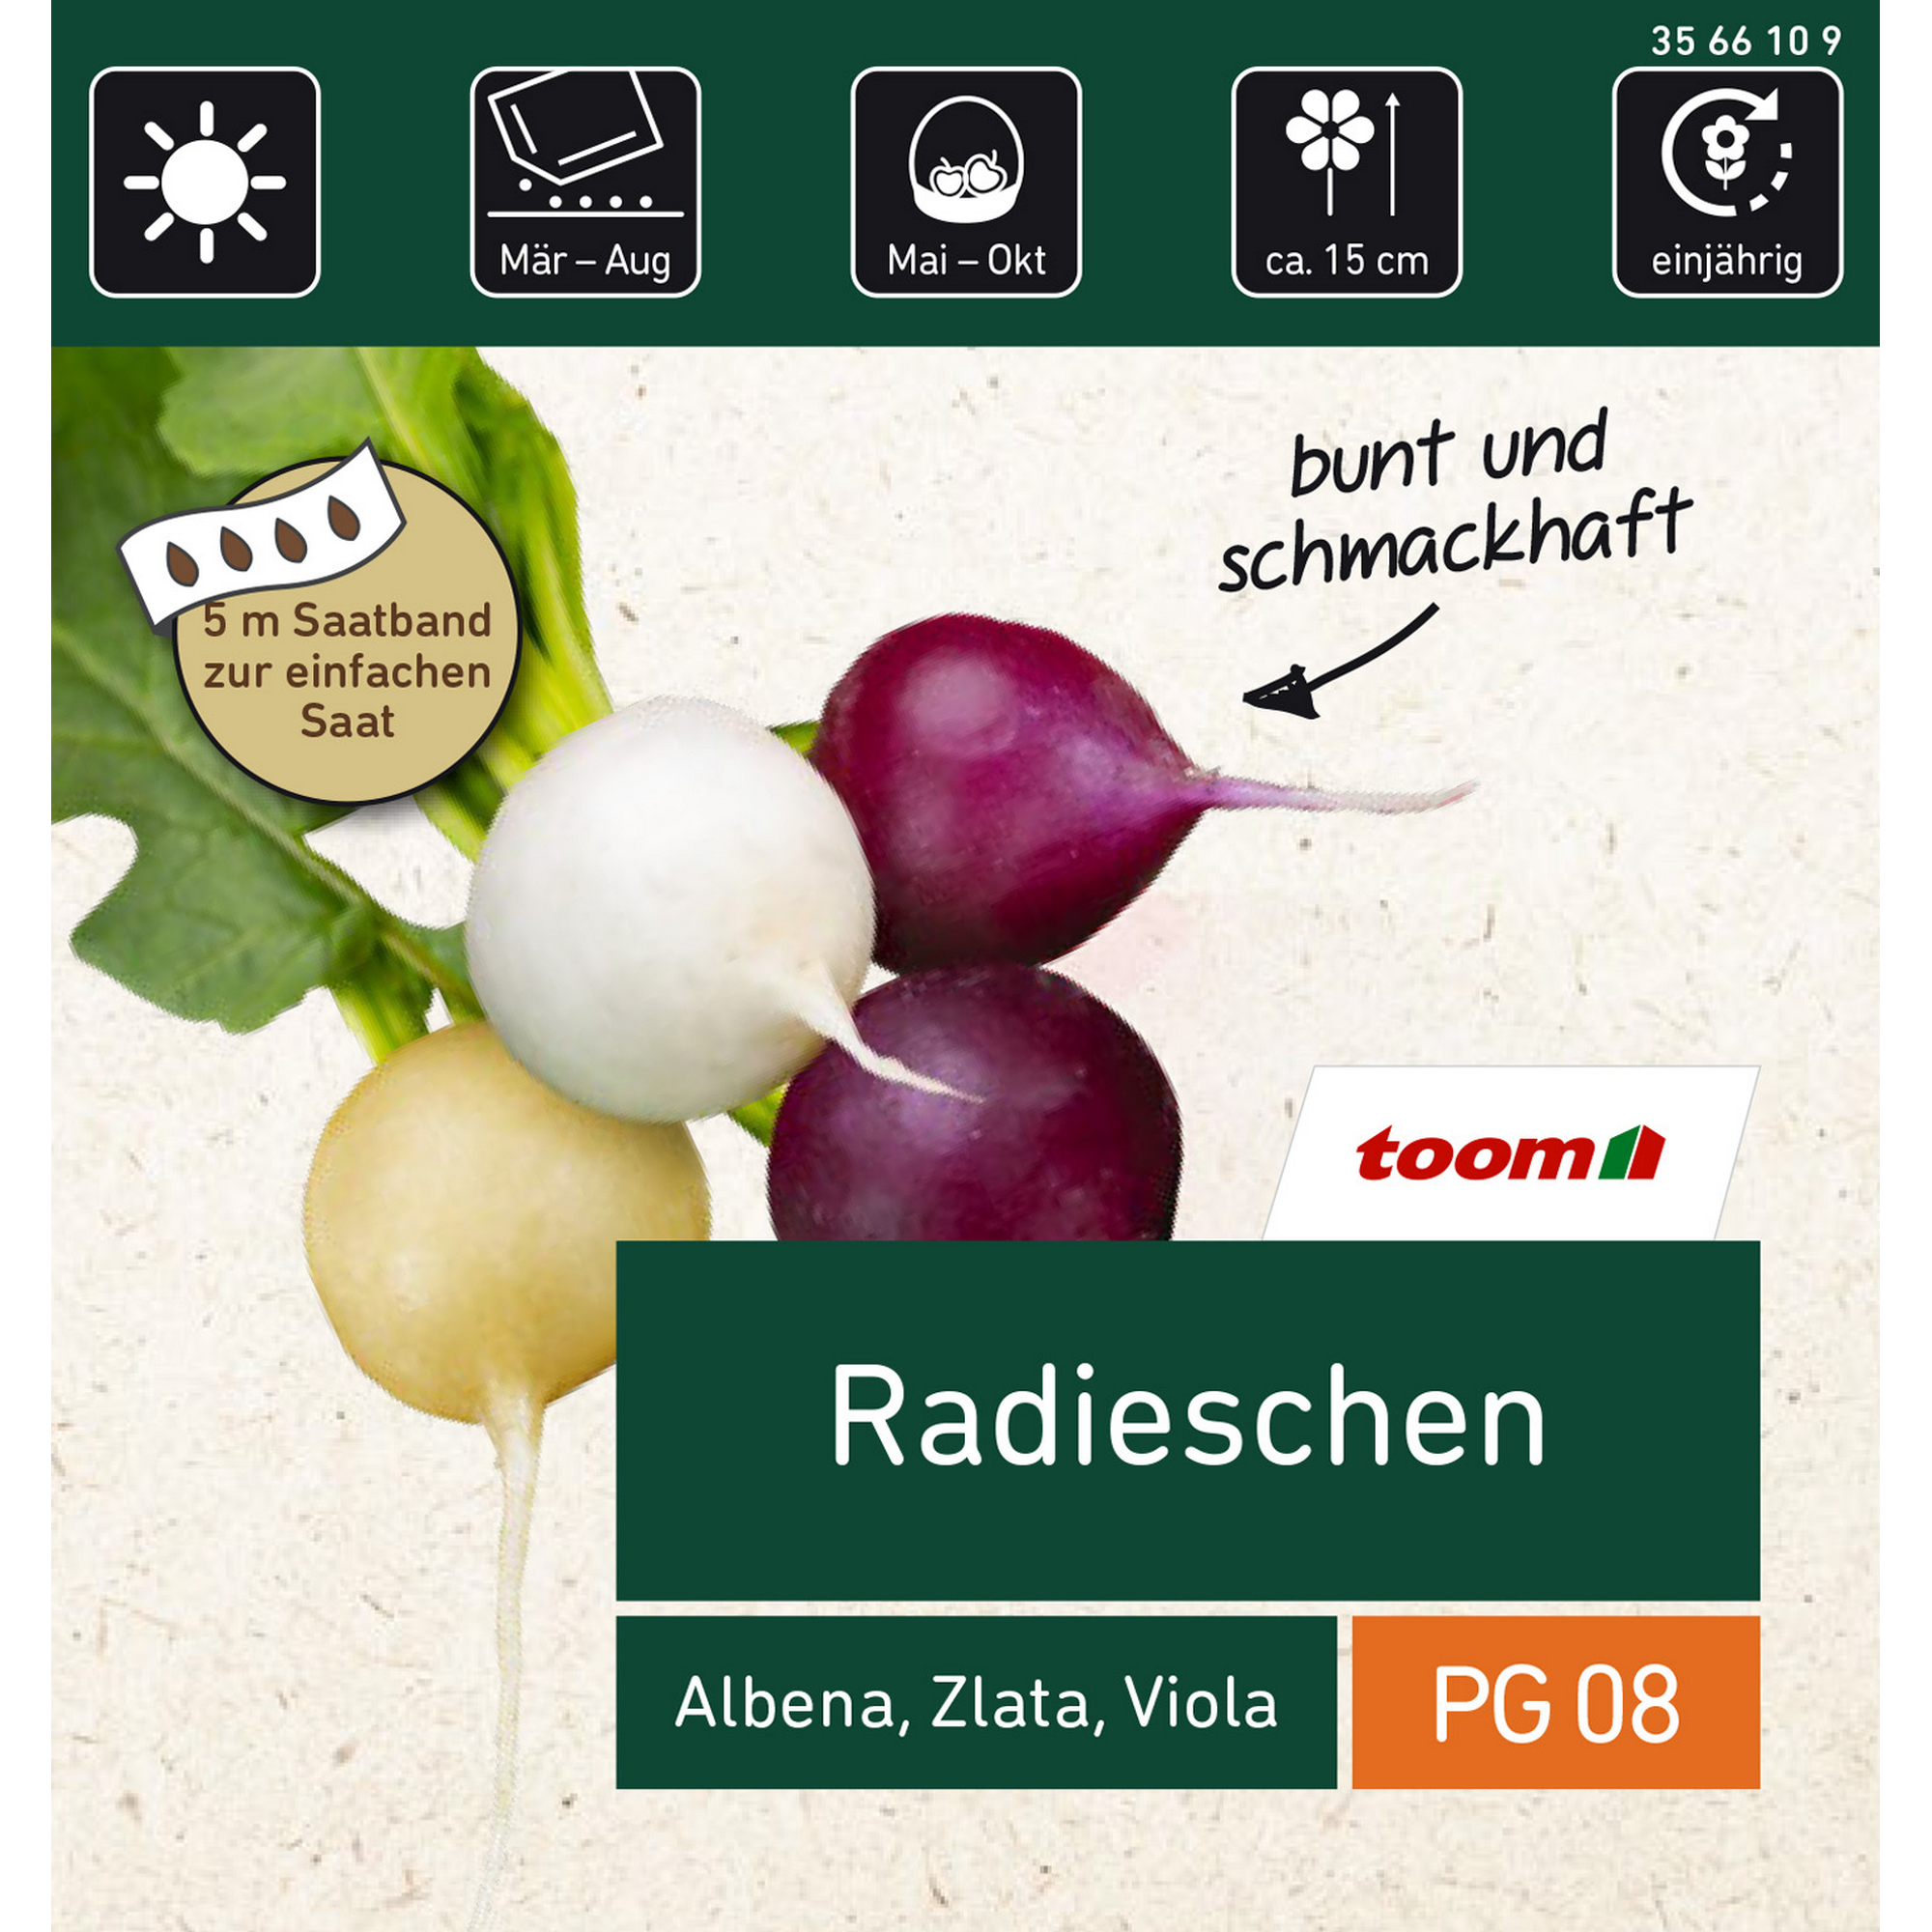 Radieschen, 3 Sorten Albena, Zlata, Viola Saatband 5 m, 3x1,67 m (max. 80x85 mm), Korn/m = 101 + product picture